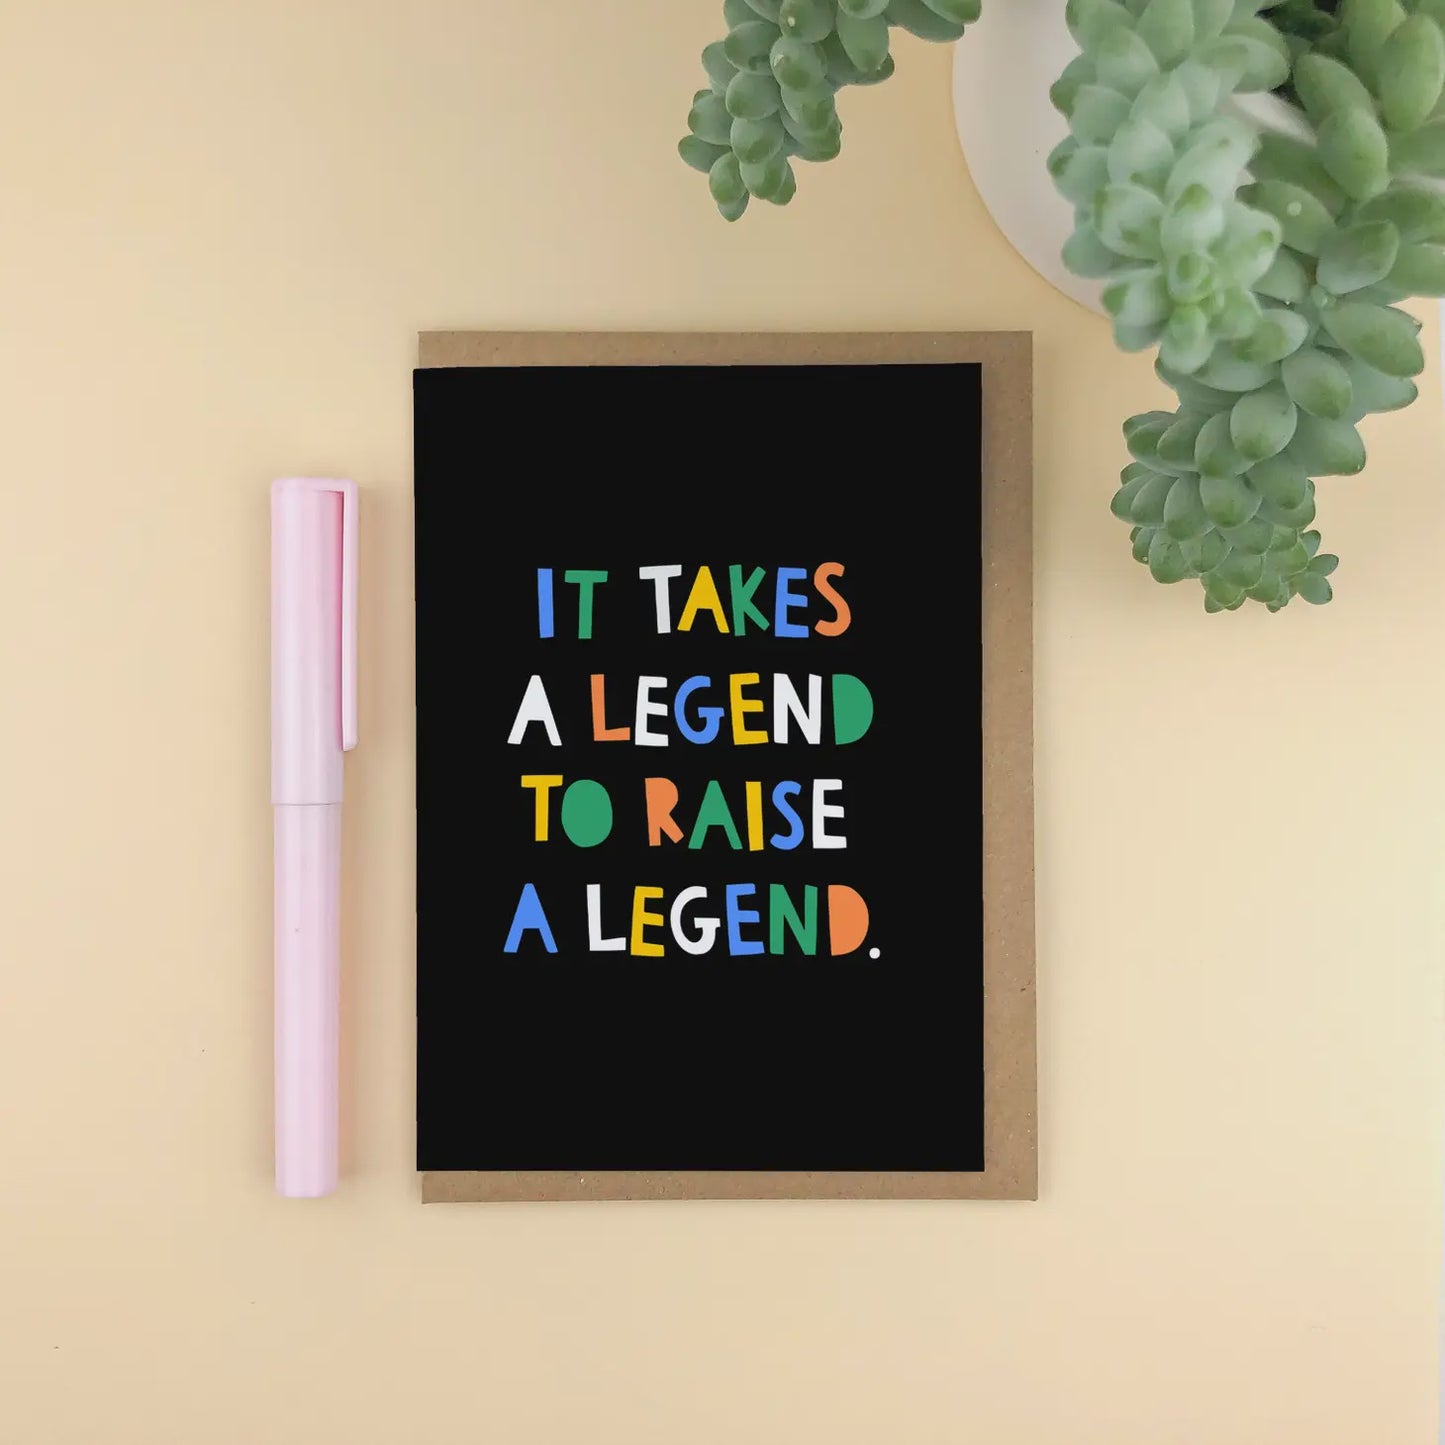 Takes a legend to raise a legend!